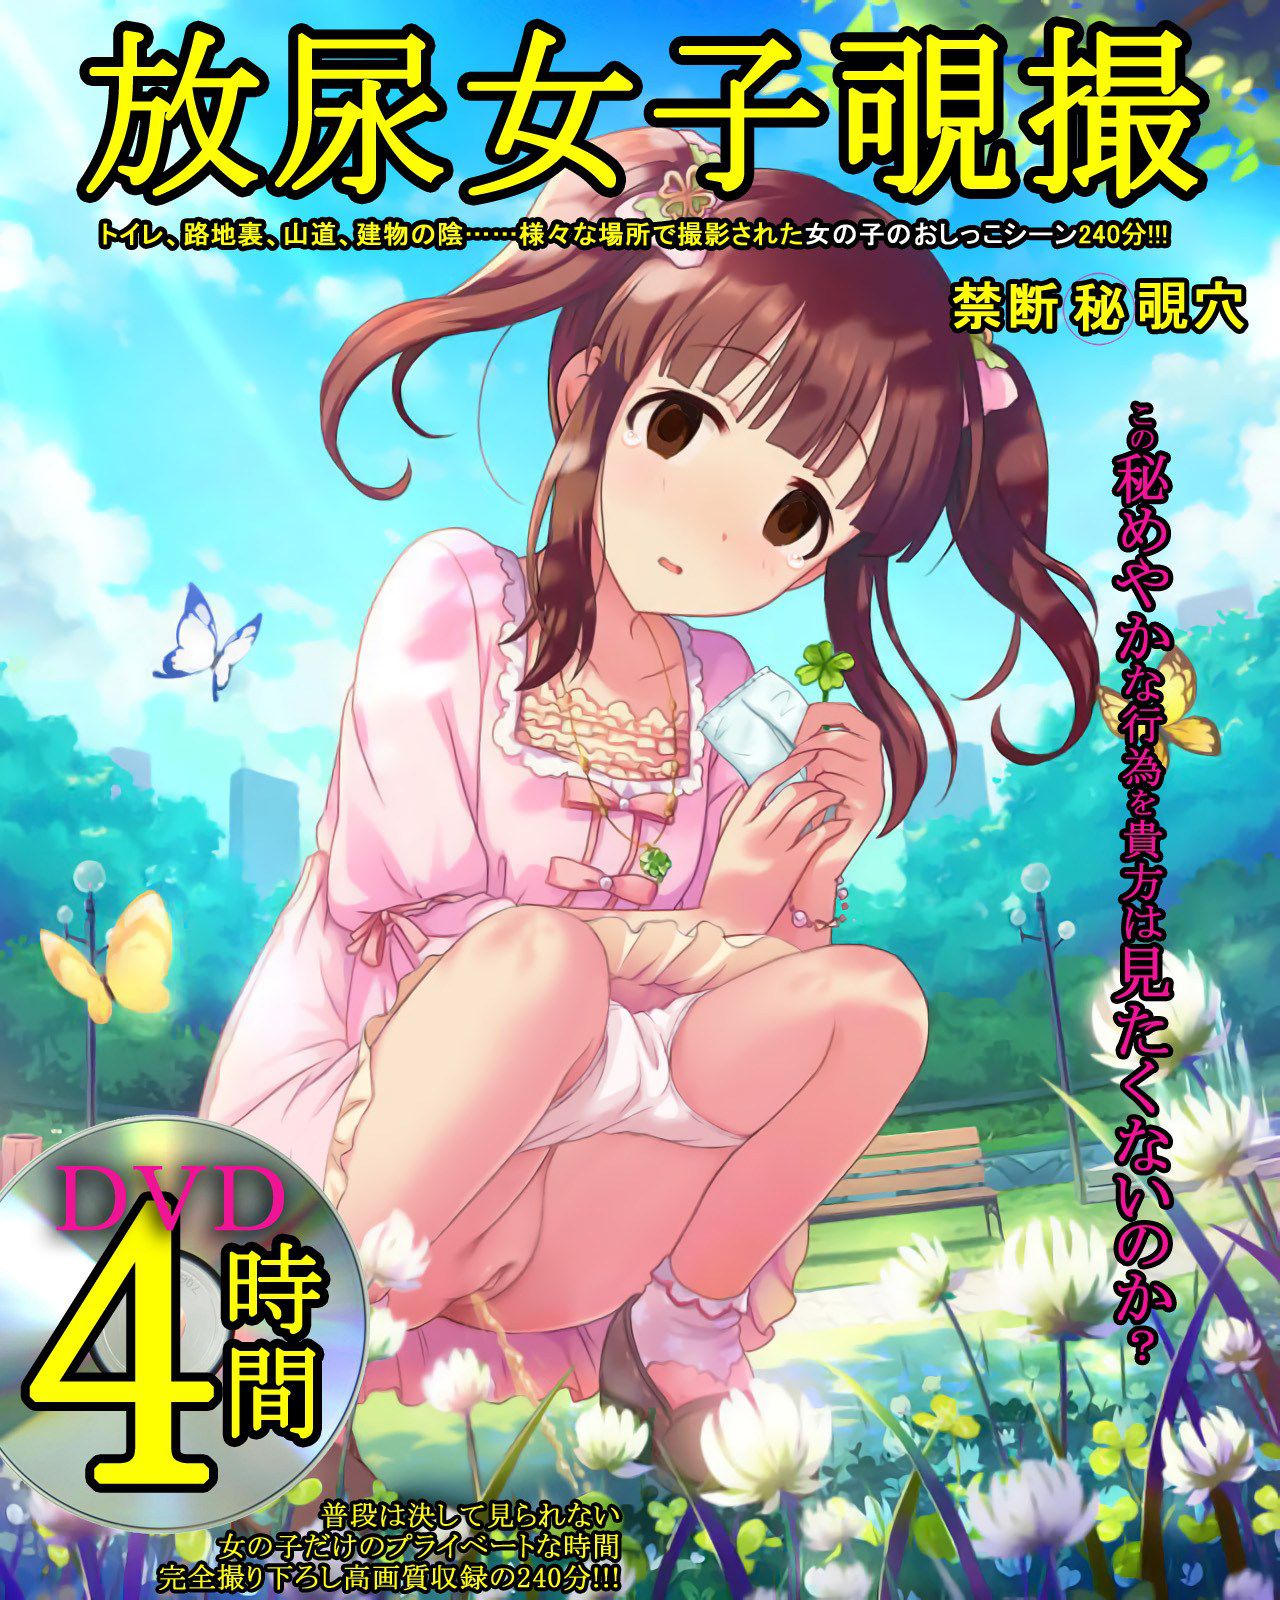 [AV Pakekola] Anime character that has been on the cover of the magazine and AV package 8 41